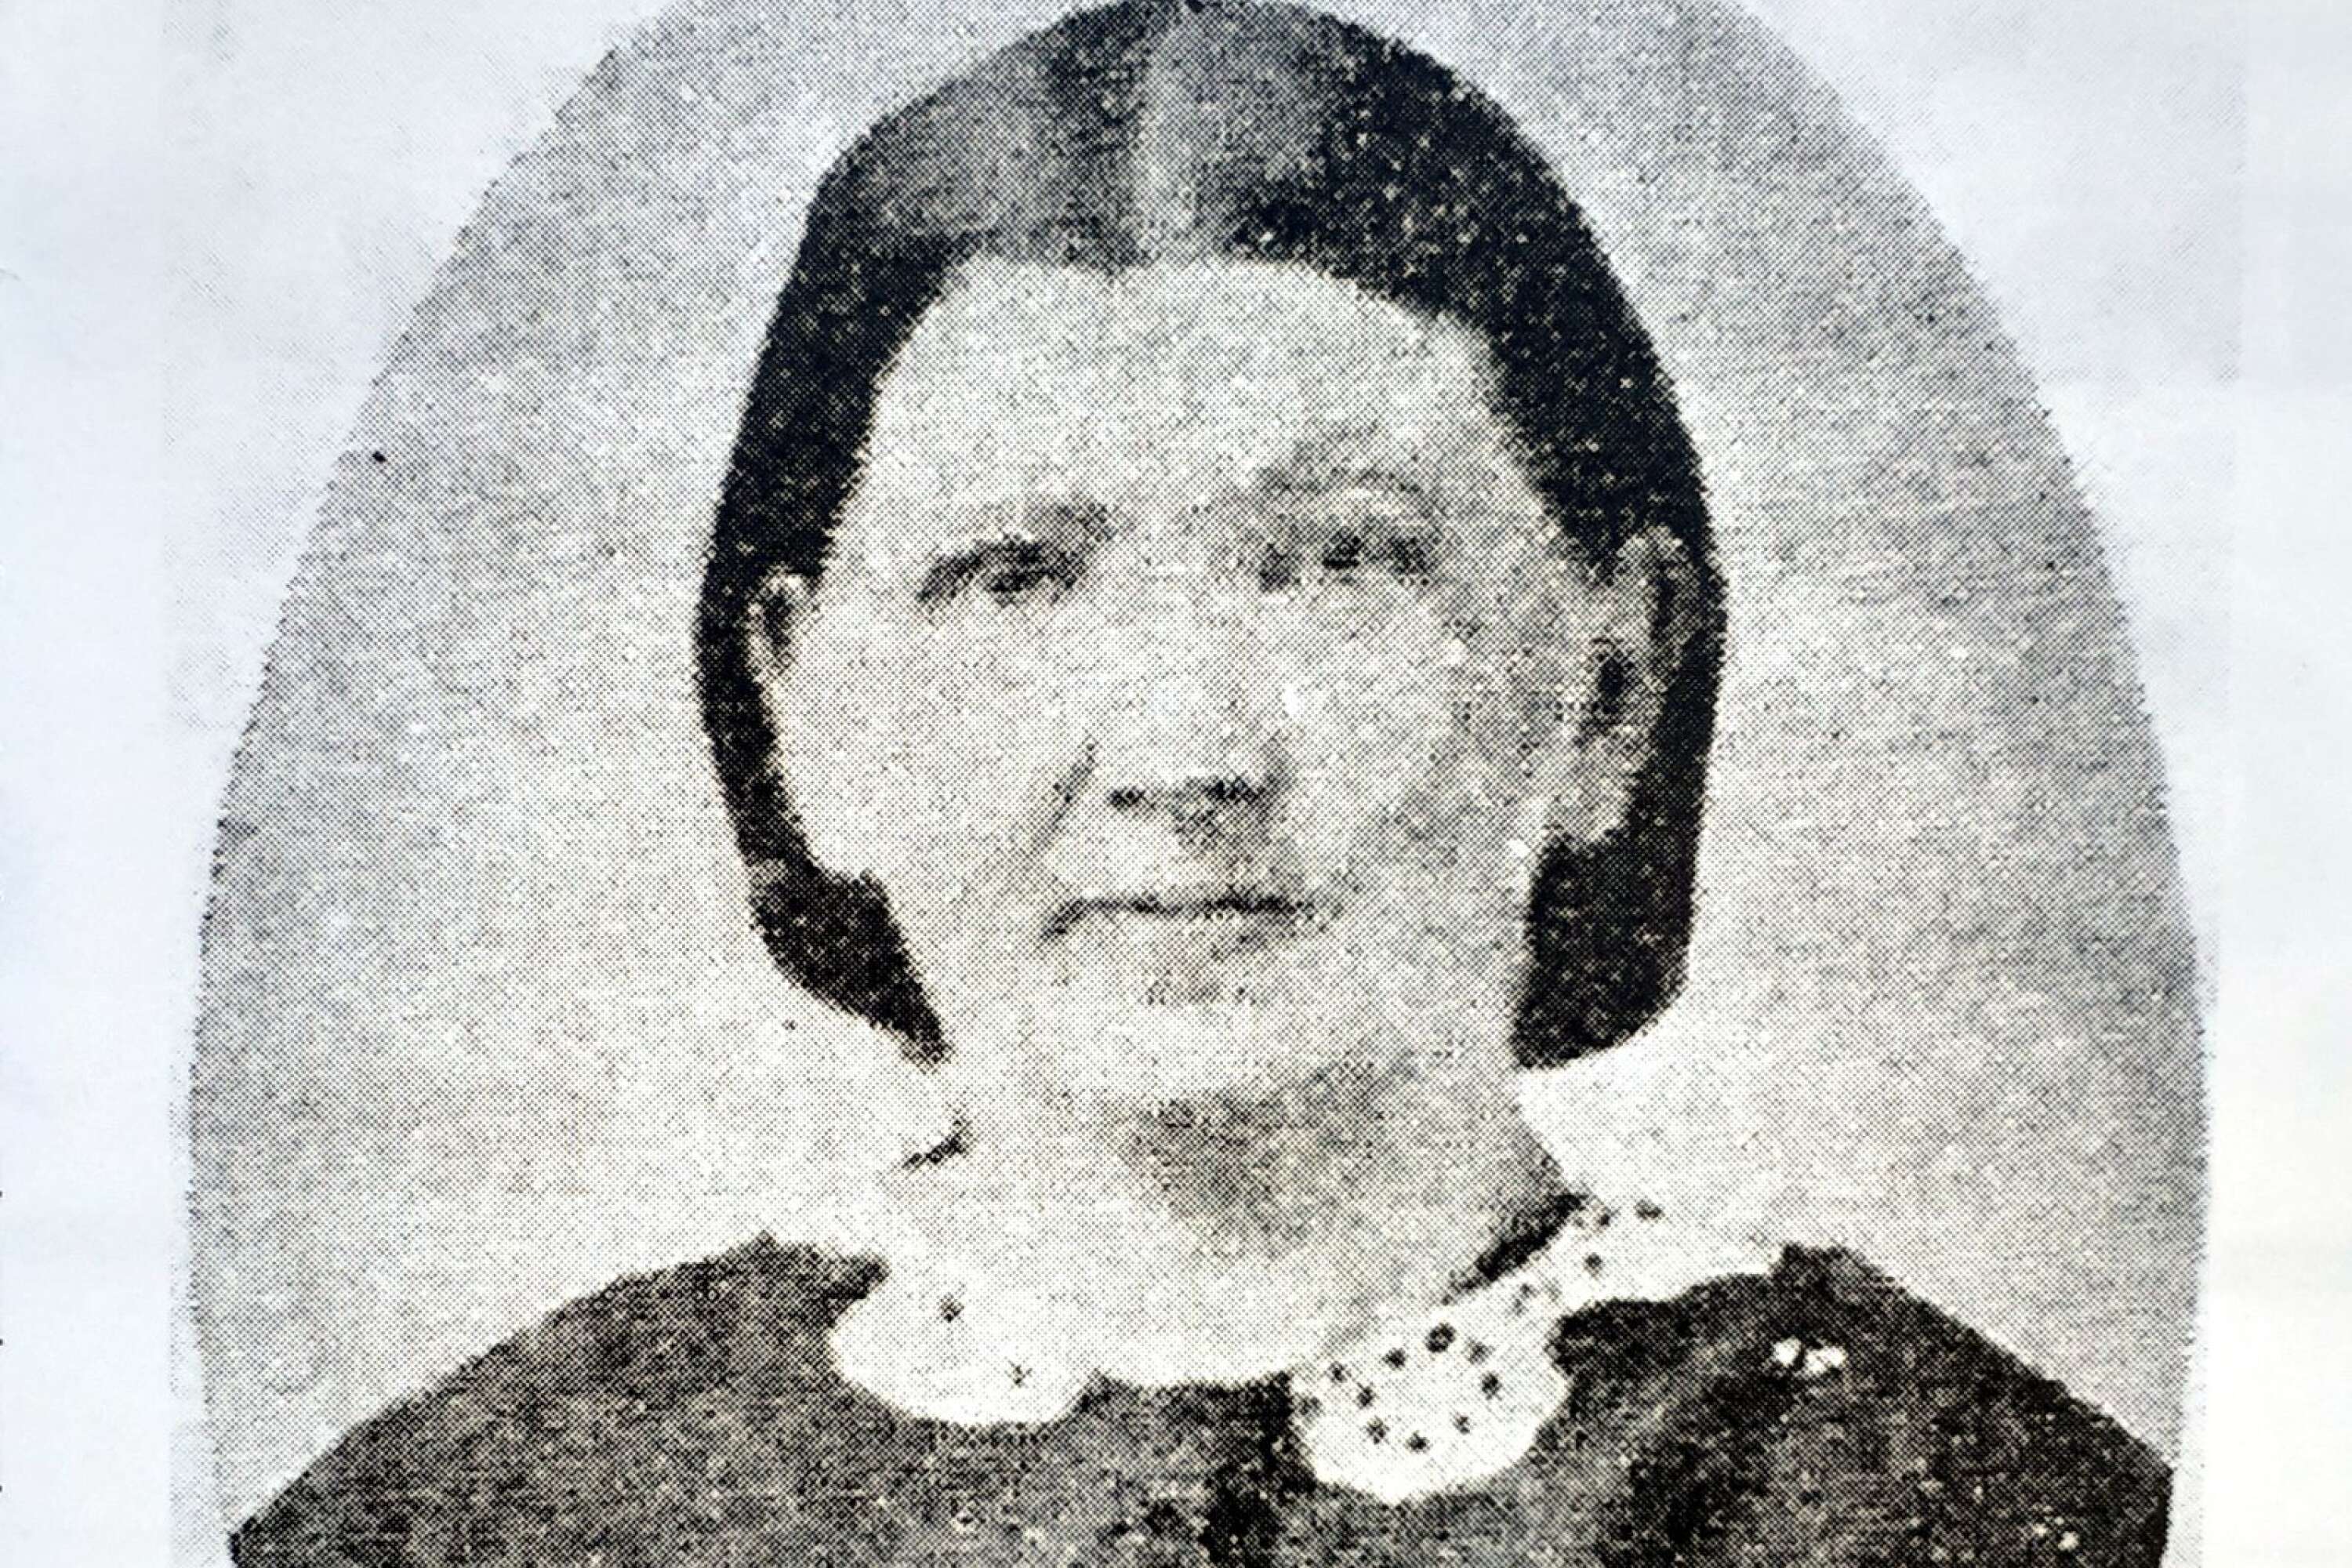 Charlotta Florén har en viktig roll i Filipstads historia - hon såg ju till att Filipstads Tidning överlevde. Hon blev tryckeriänka två gånger om, men drev tidningen vidare.